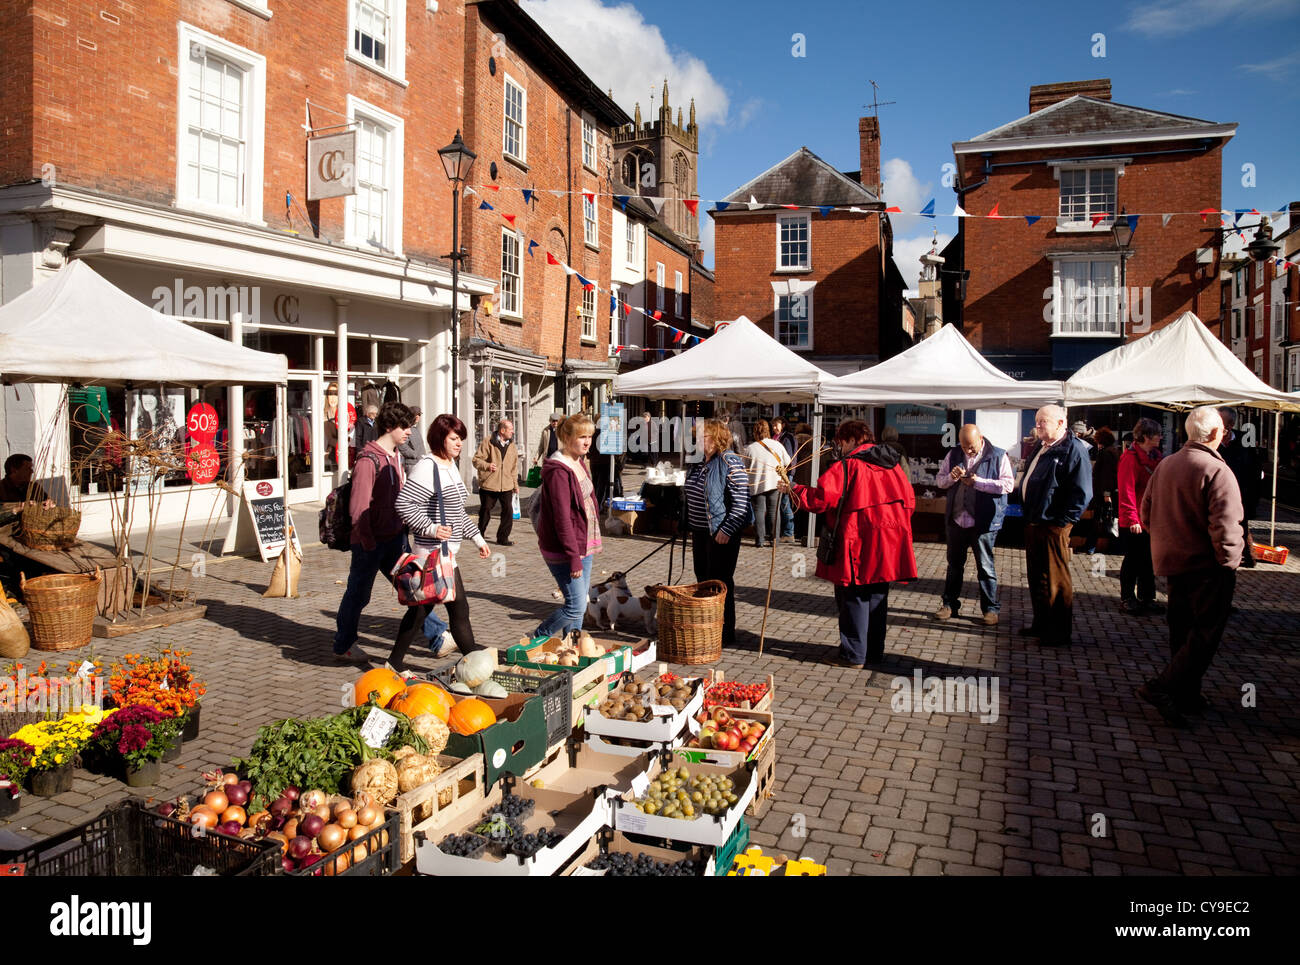 Traditioneller Marktplatz der britischen Stadt; Menschen einkaufen am Ludlow Marktplatz, Ludlow Shropshire UK Stockfoto